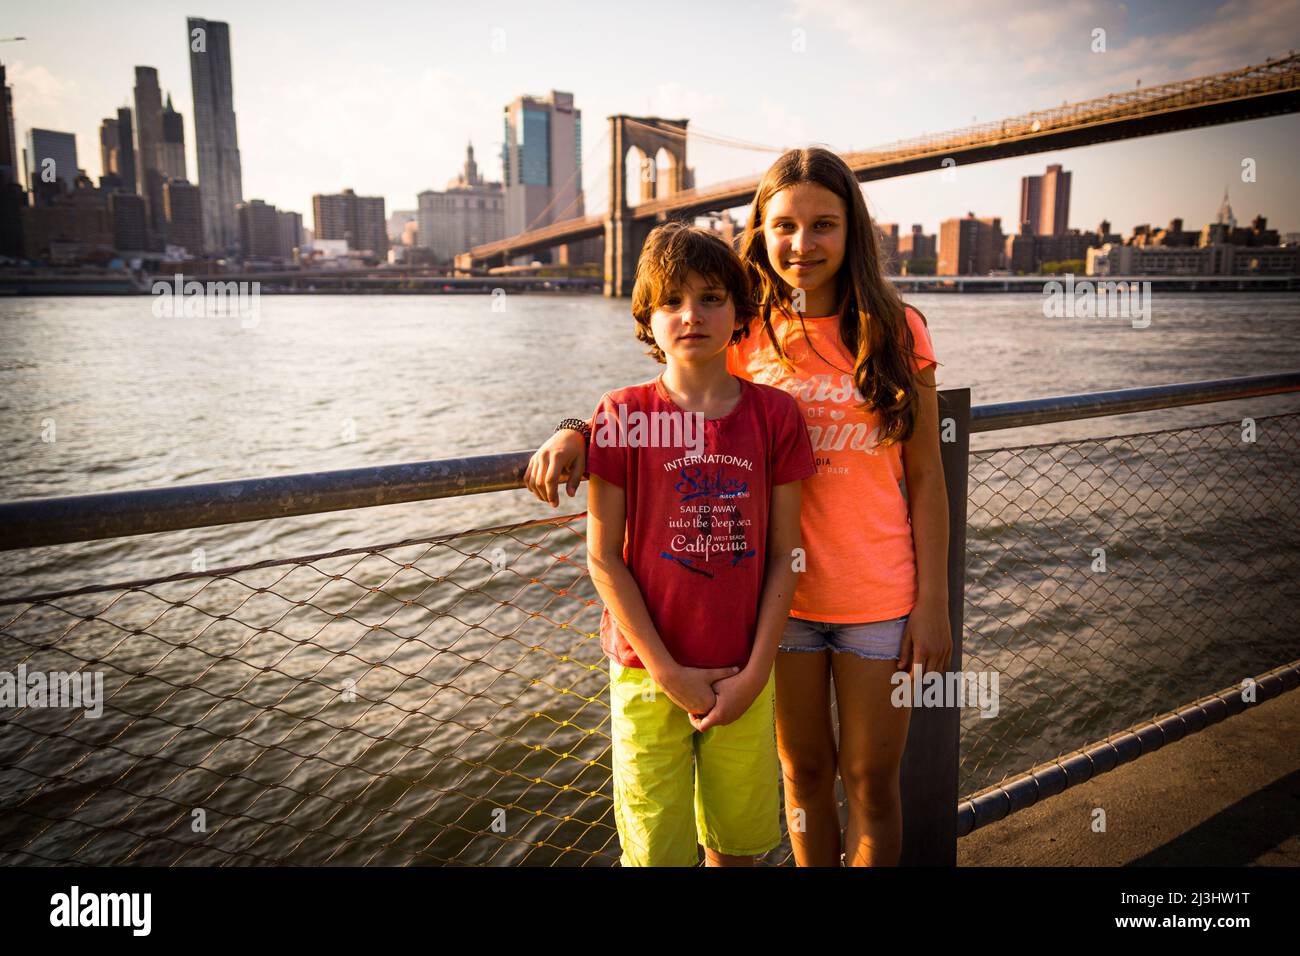 DUMBO/FULTON FERRY, New York City, NY, États-Unis, jeune fille de 14 ans de race blanche et adolescent de 12 ans de race blanche, tous deux avec des cheveux bruns et un style d'été devant le pont de Brooklyn sur East River Banque D'Images